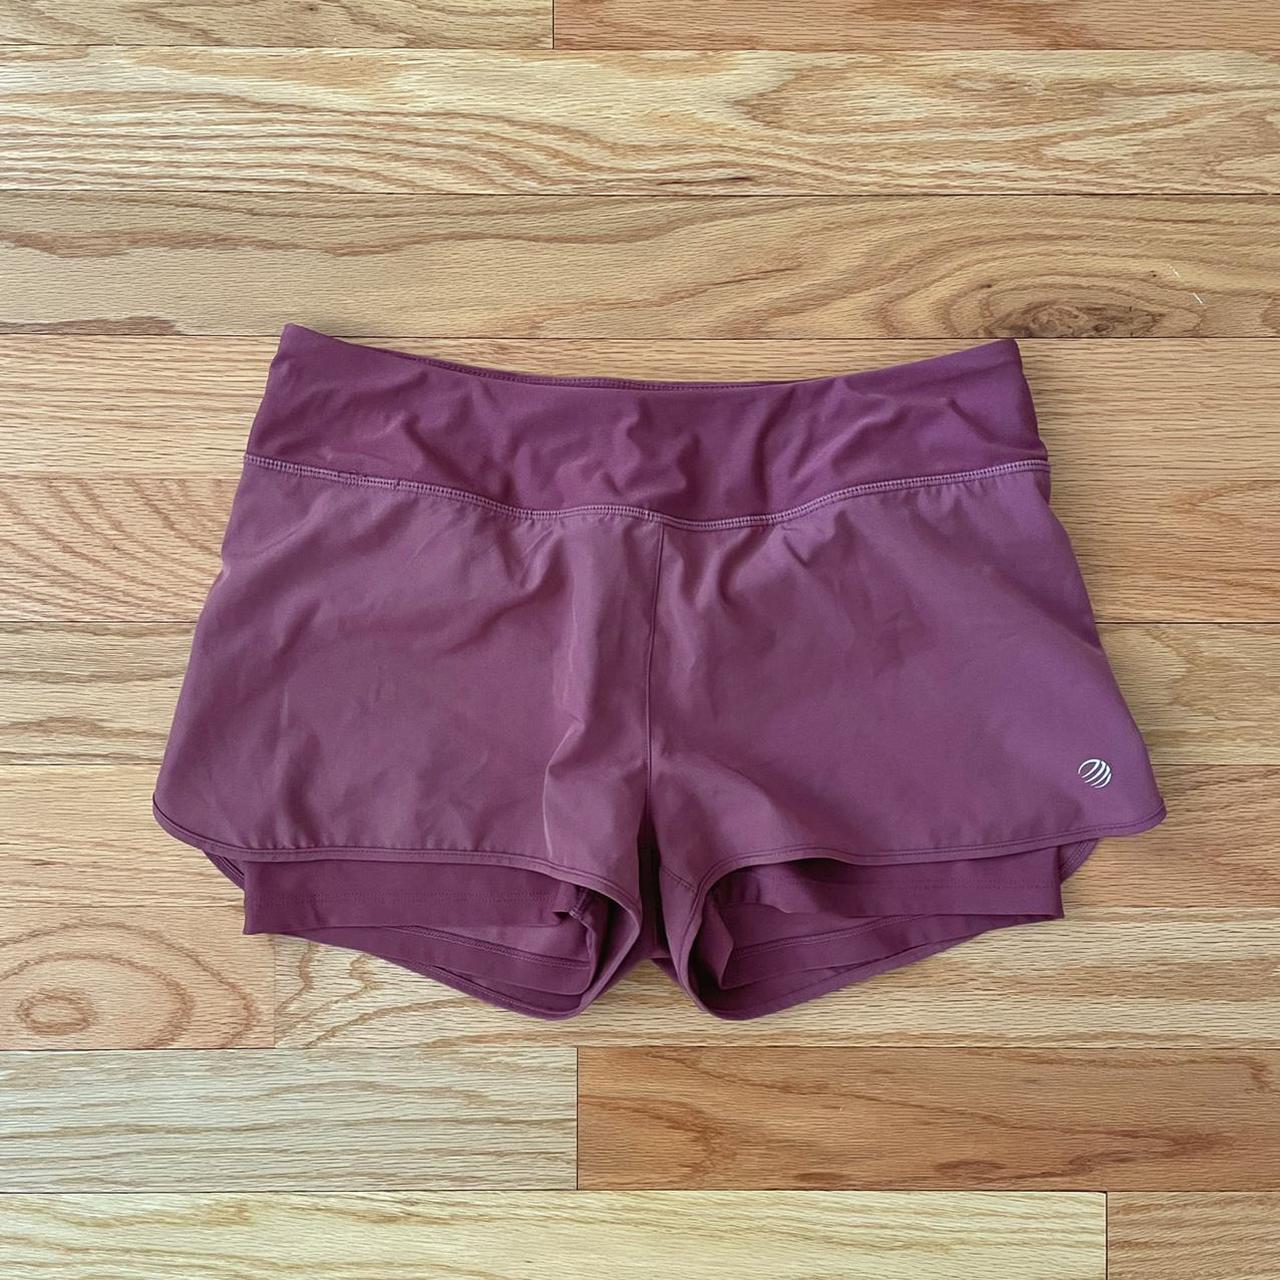 Under Armour Women's Pink Shorts | Depop